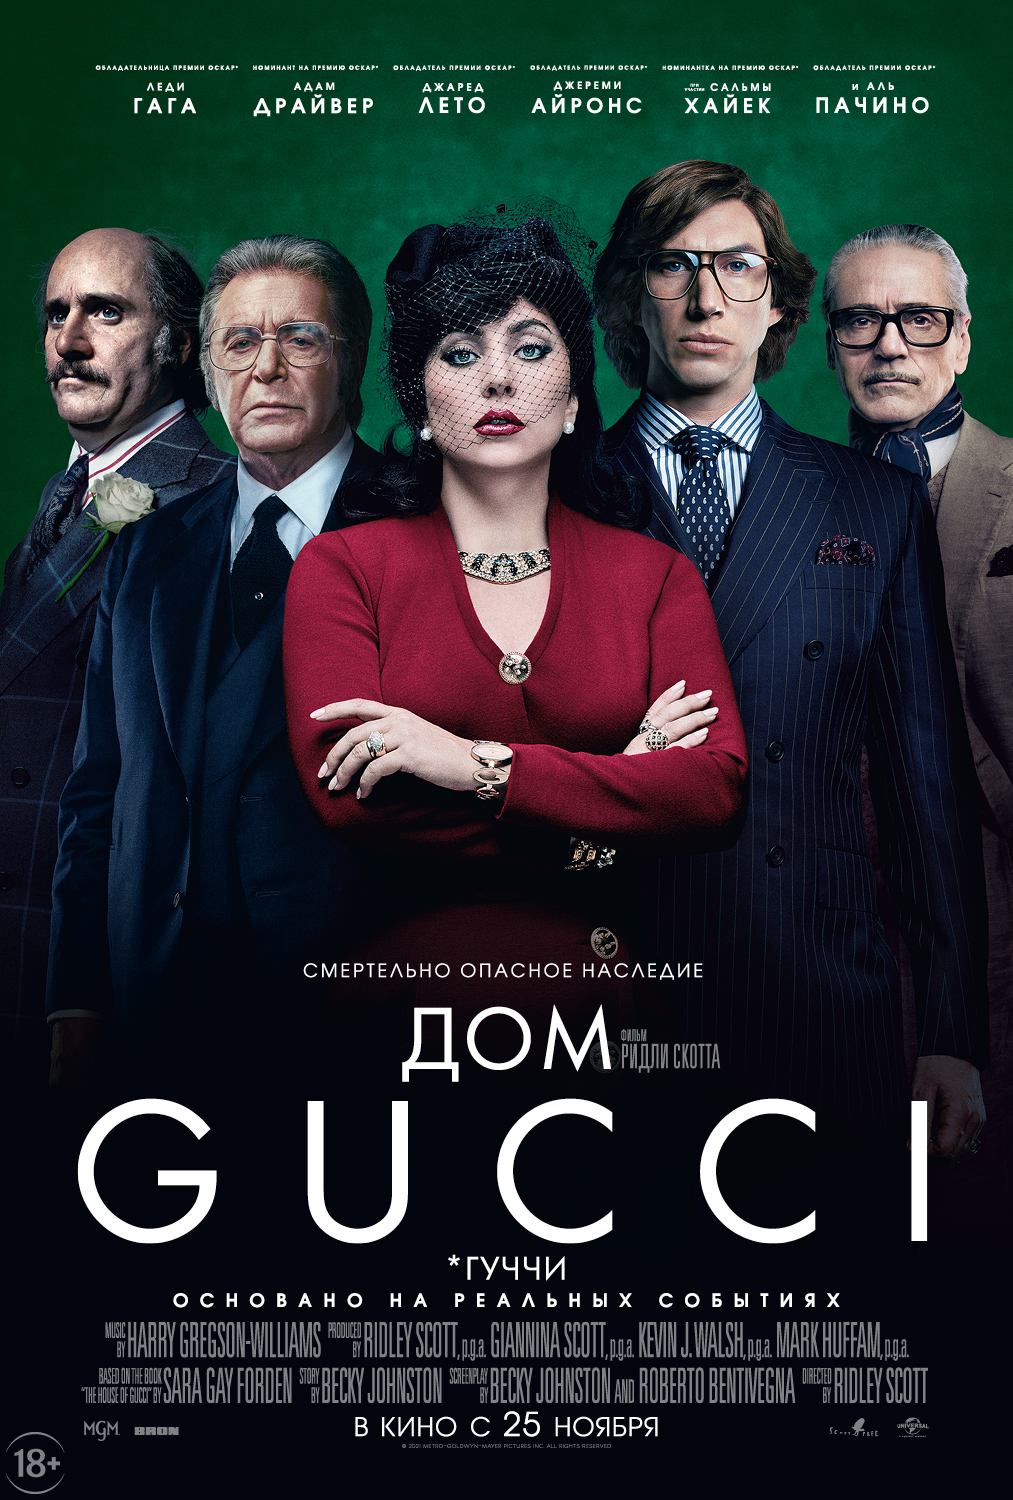 Дом Gucci»: каким вышел самый скандальный и модный фильм года с Леди Гагой  и Адамом Драйвером? 18+ | 06.12.2021 | Омск - БезФормата